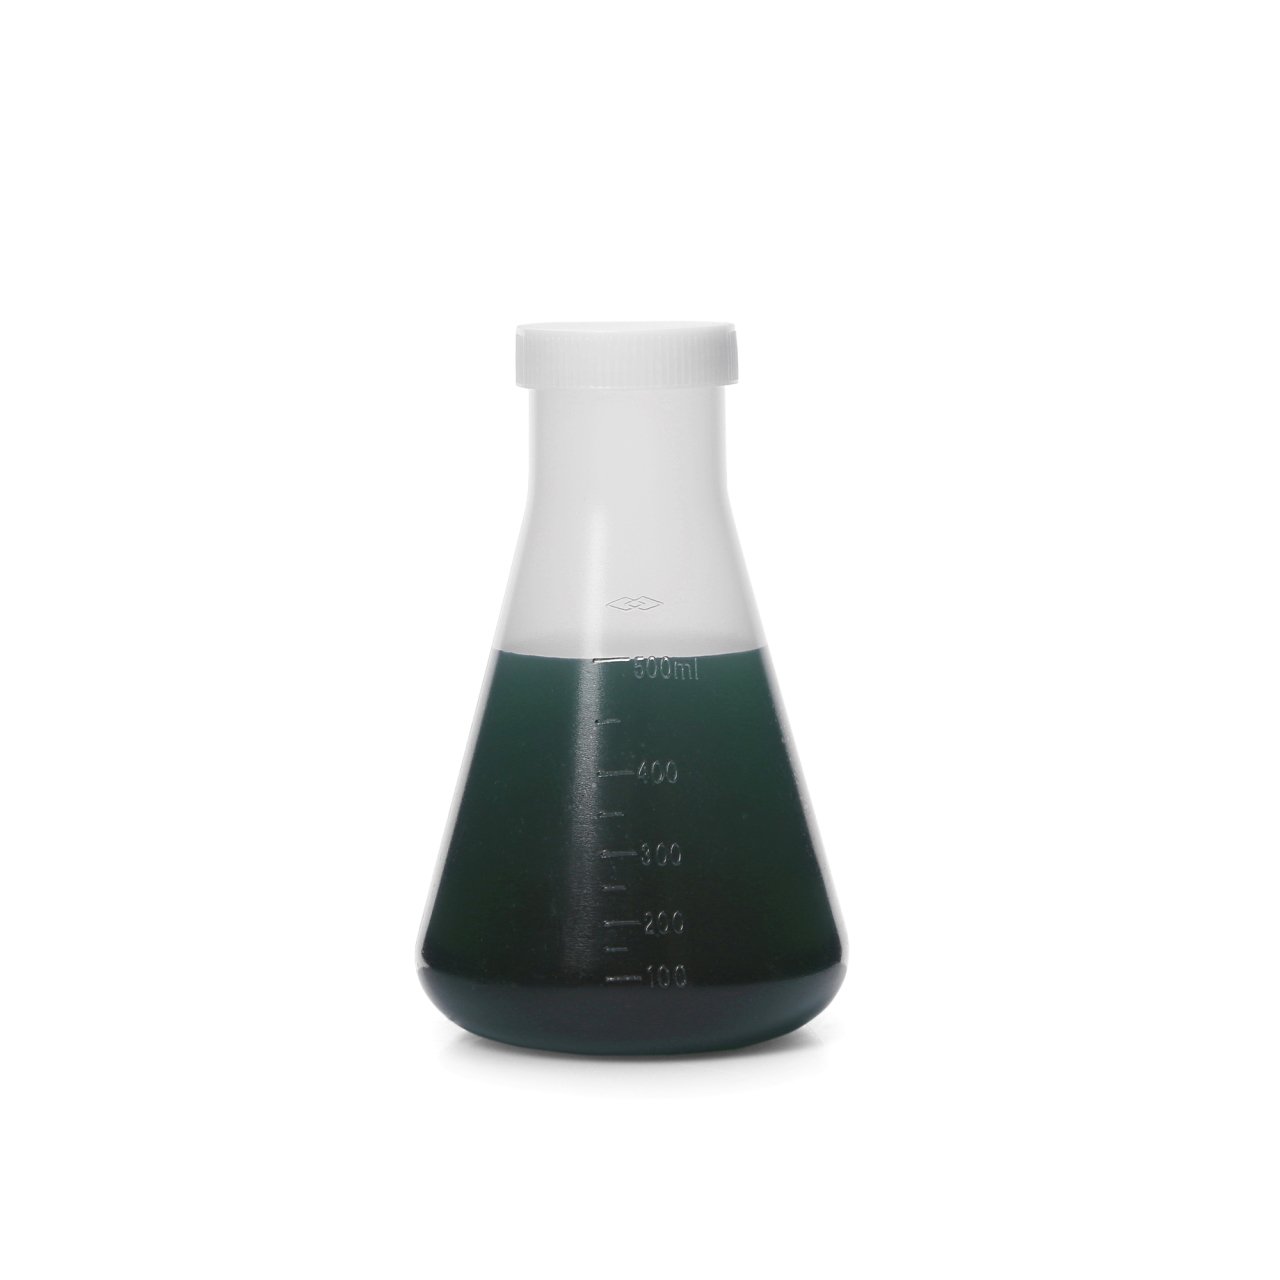 Borox Plastik Erlen 500 ml - Erlenmeyer Flask Vida Kapaklı